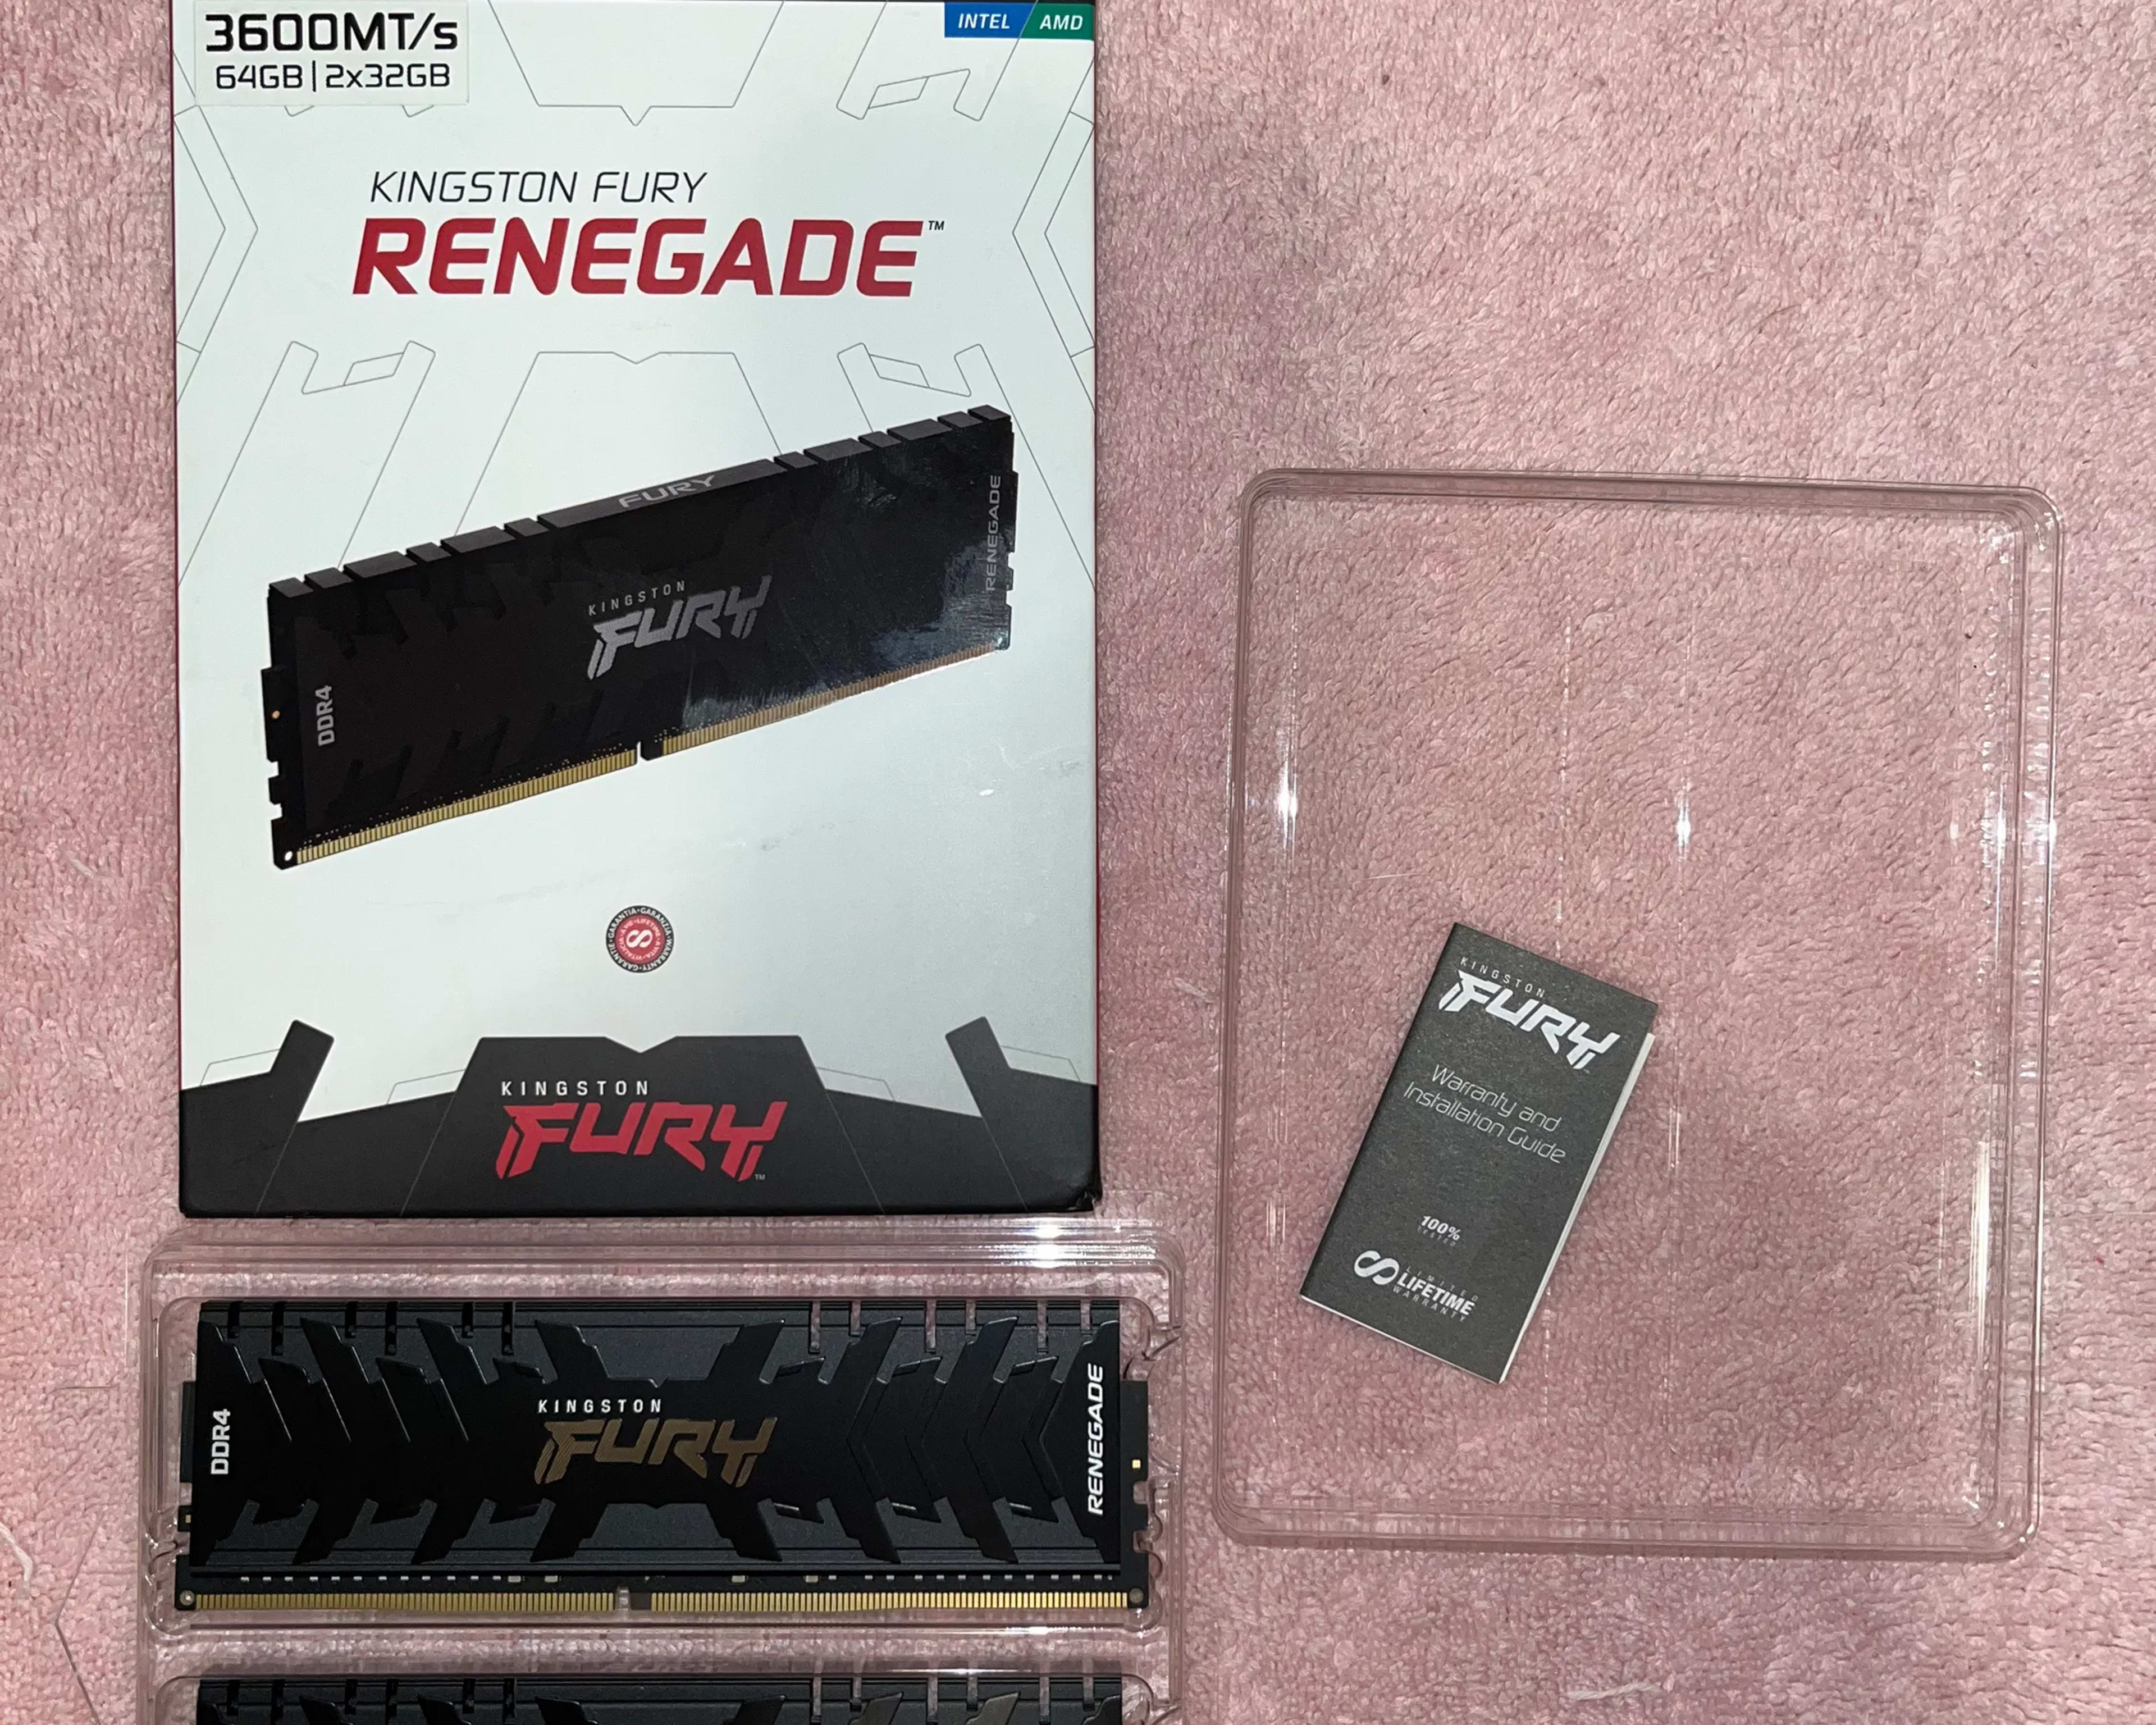 Kingston Fury Renegade DDR4 3600MT/s CL 18 64GB (2 x 32GB) kit